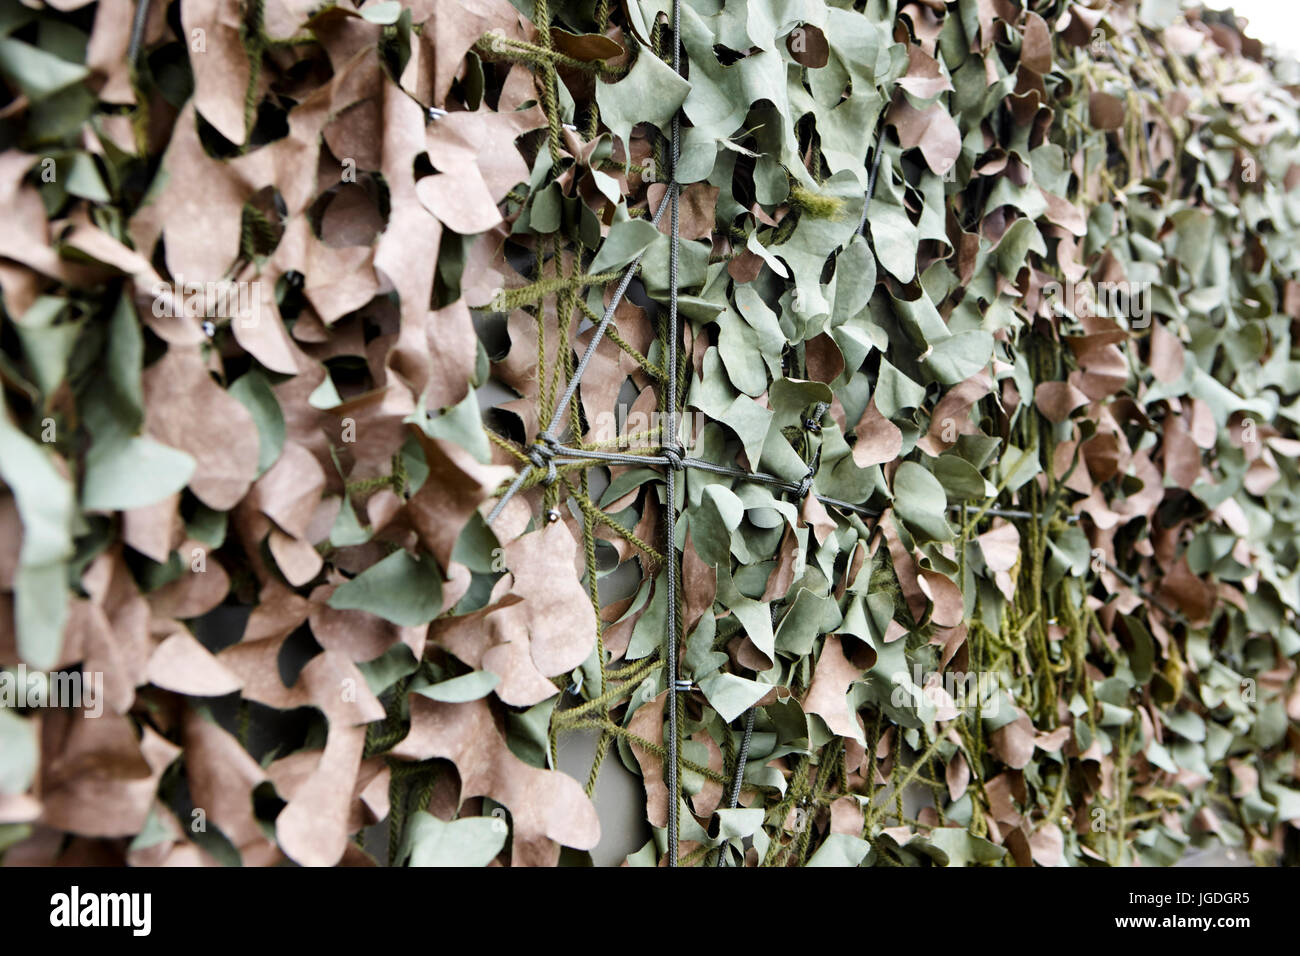 Esercito britannico il vecchio stile woodland camouflage netting rivestimento veicoli per il Regno Unito Foto Stock